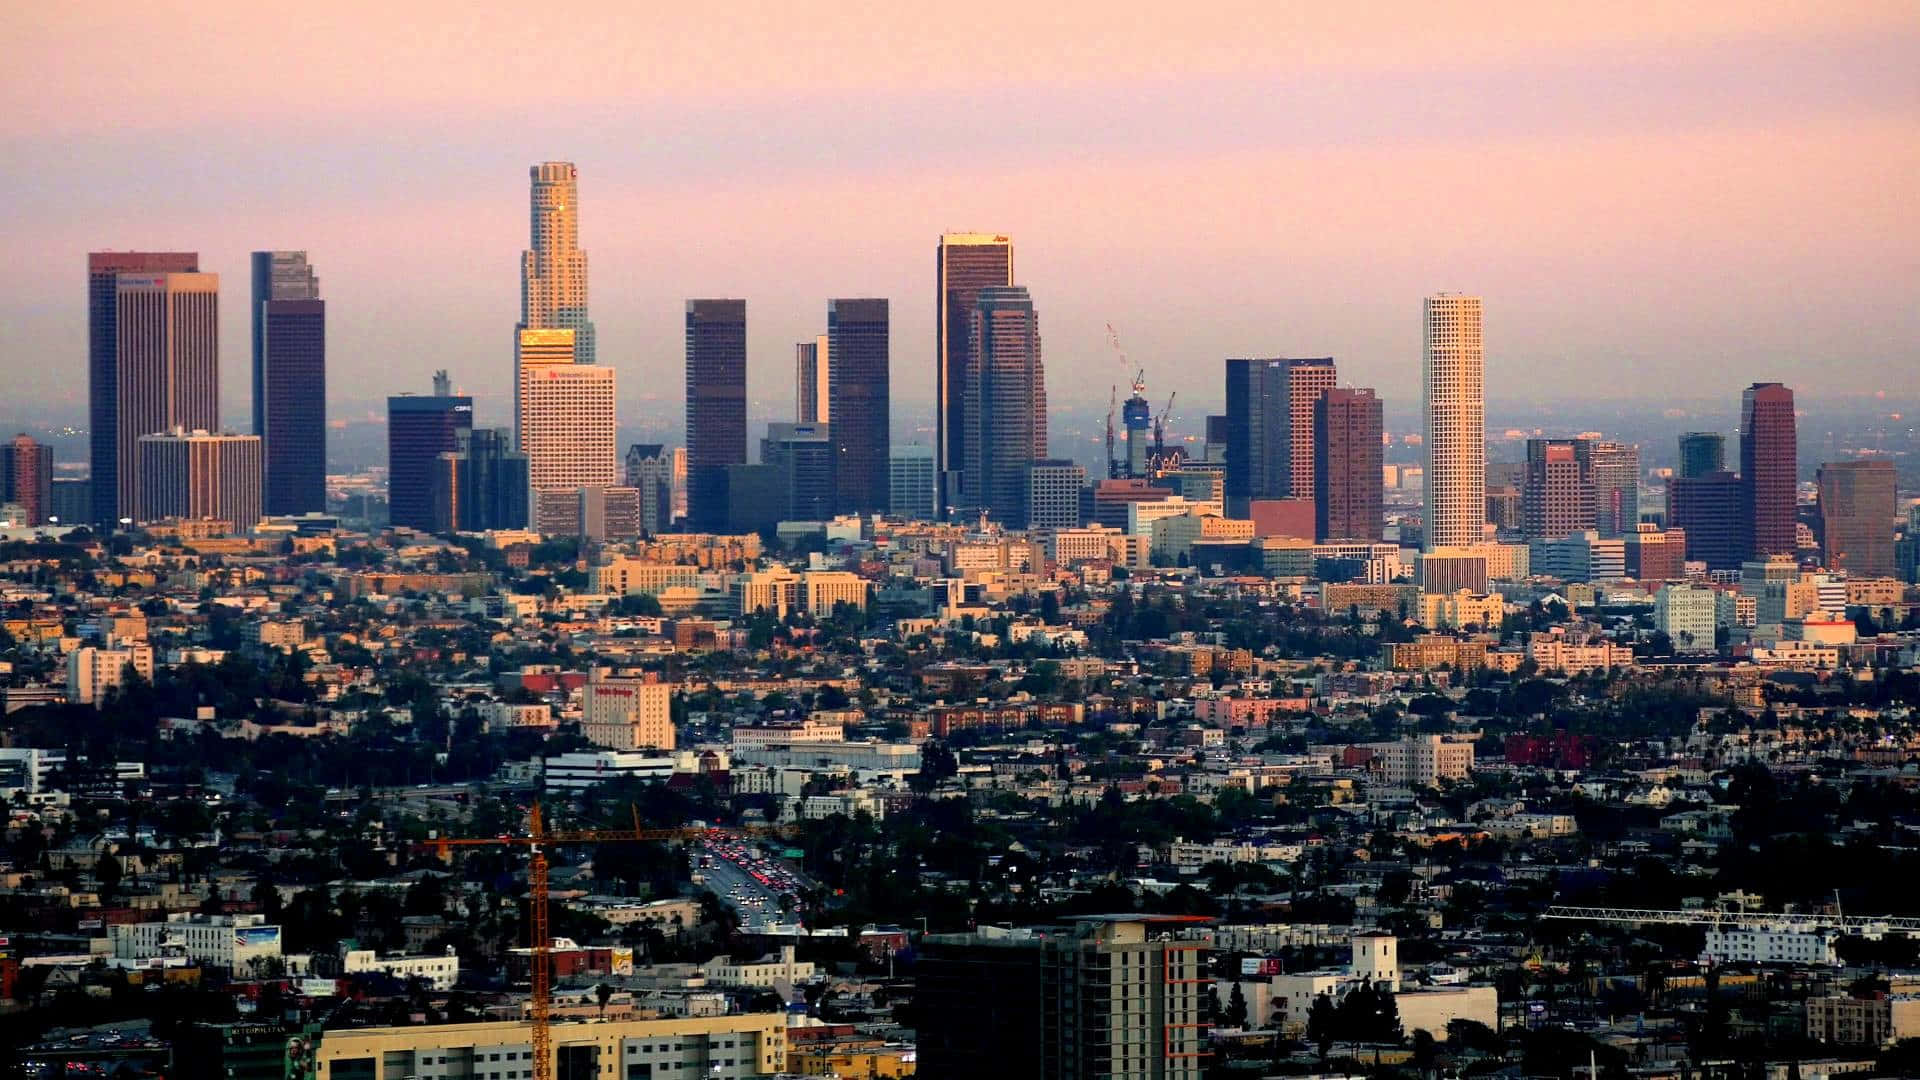 Stupendavista Del Panorama Di Los Angeles Al Tramonto